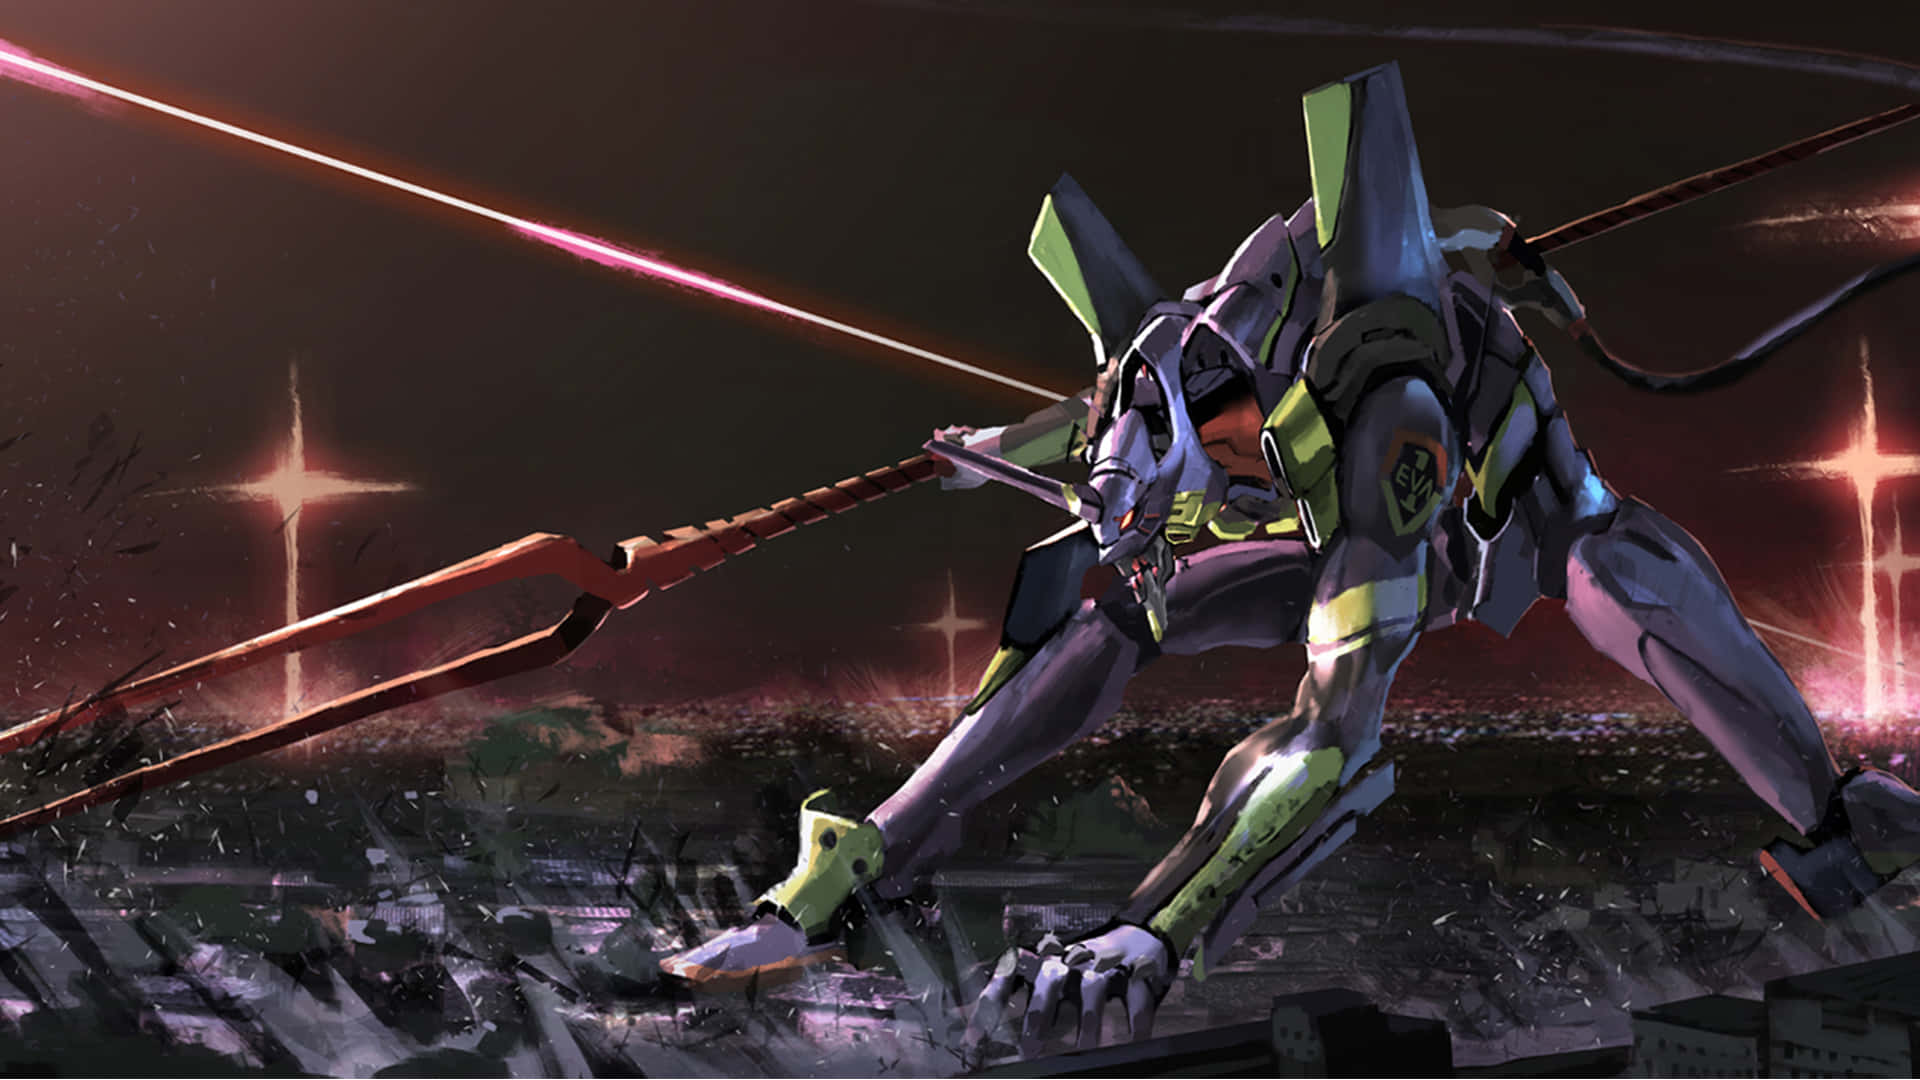 Shinjiikari Kämpft Neben Eva-01, Um Tokyo-3 Vor Den Einfallenden Engeln Zu Schützen.